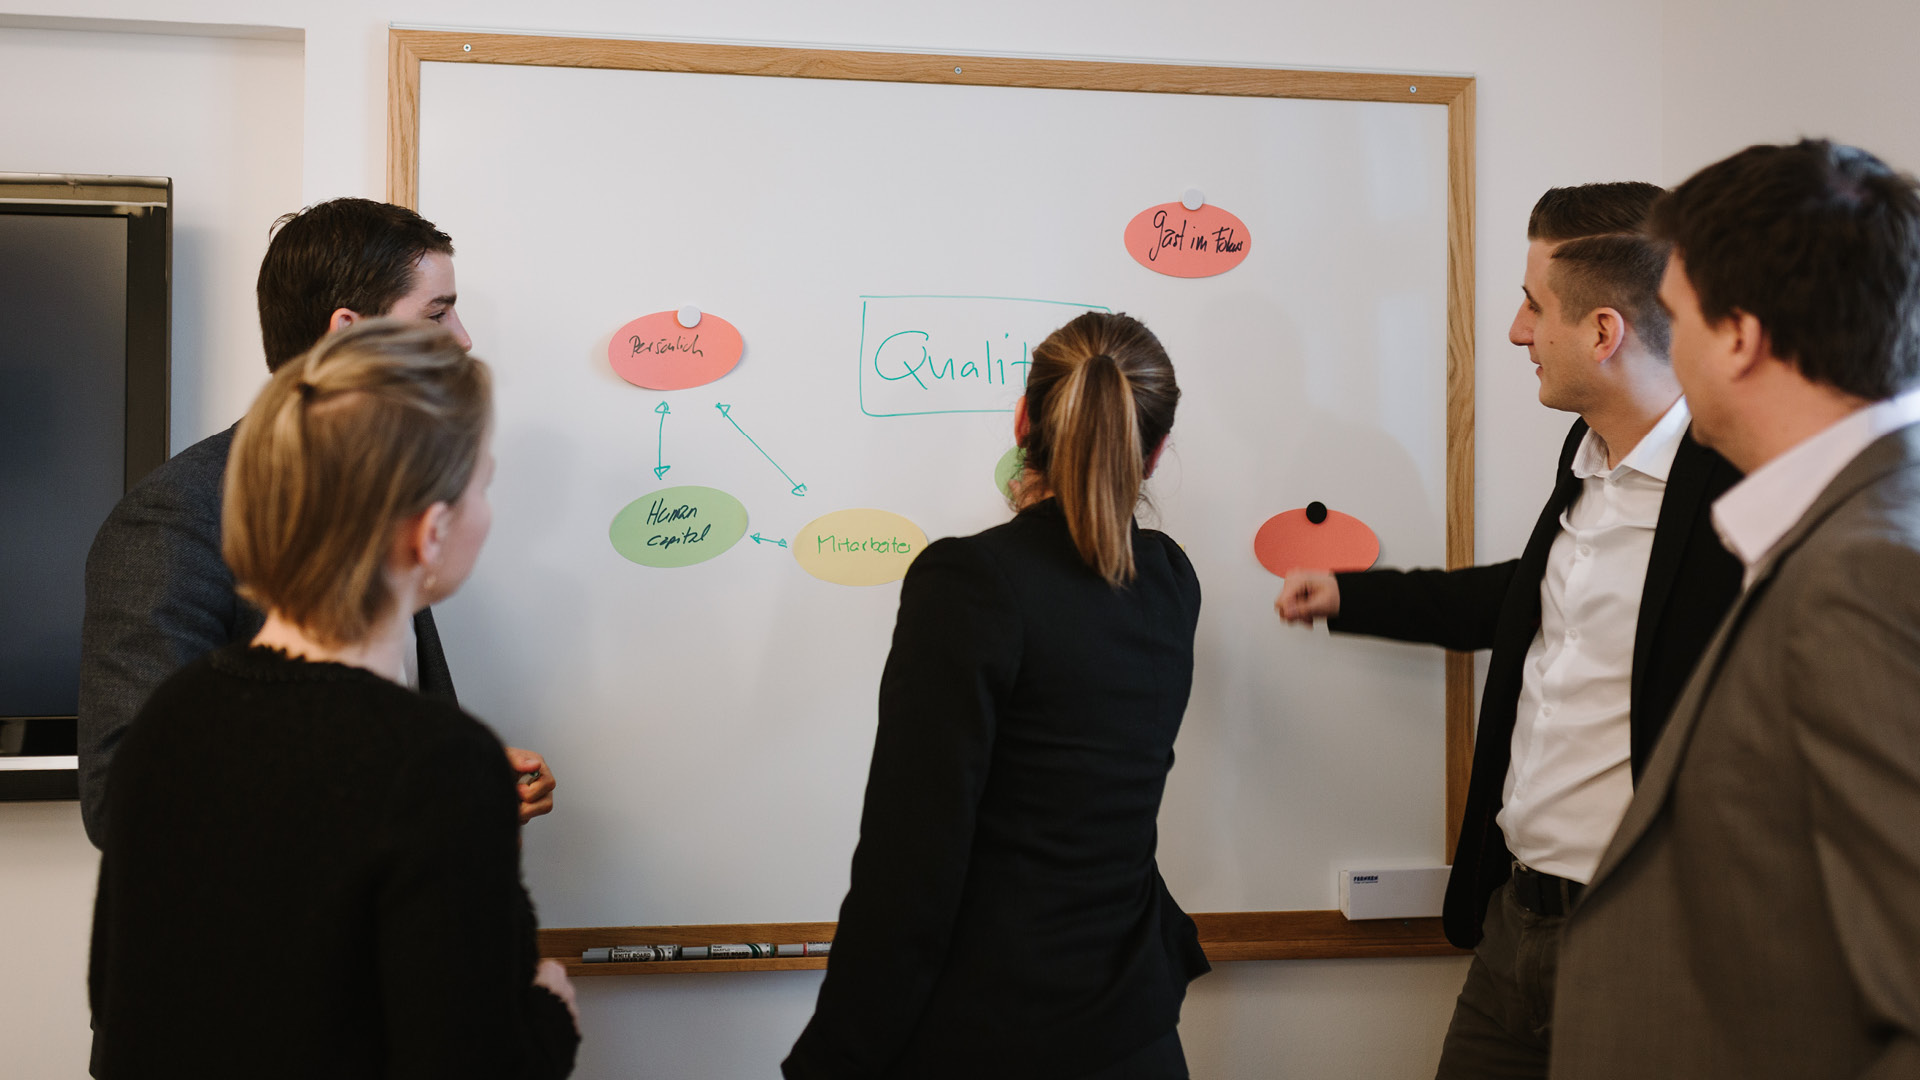 Gruppe beim Brainstorming am Whiteboard im Seminarraum